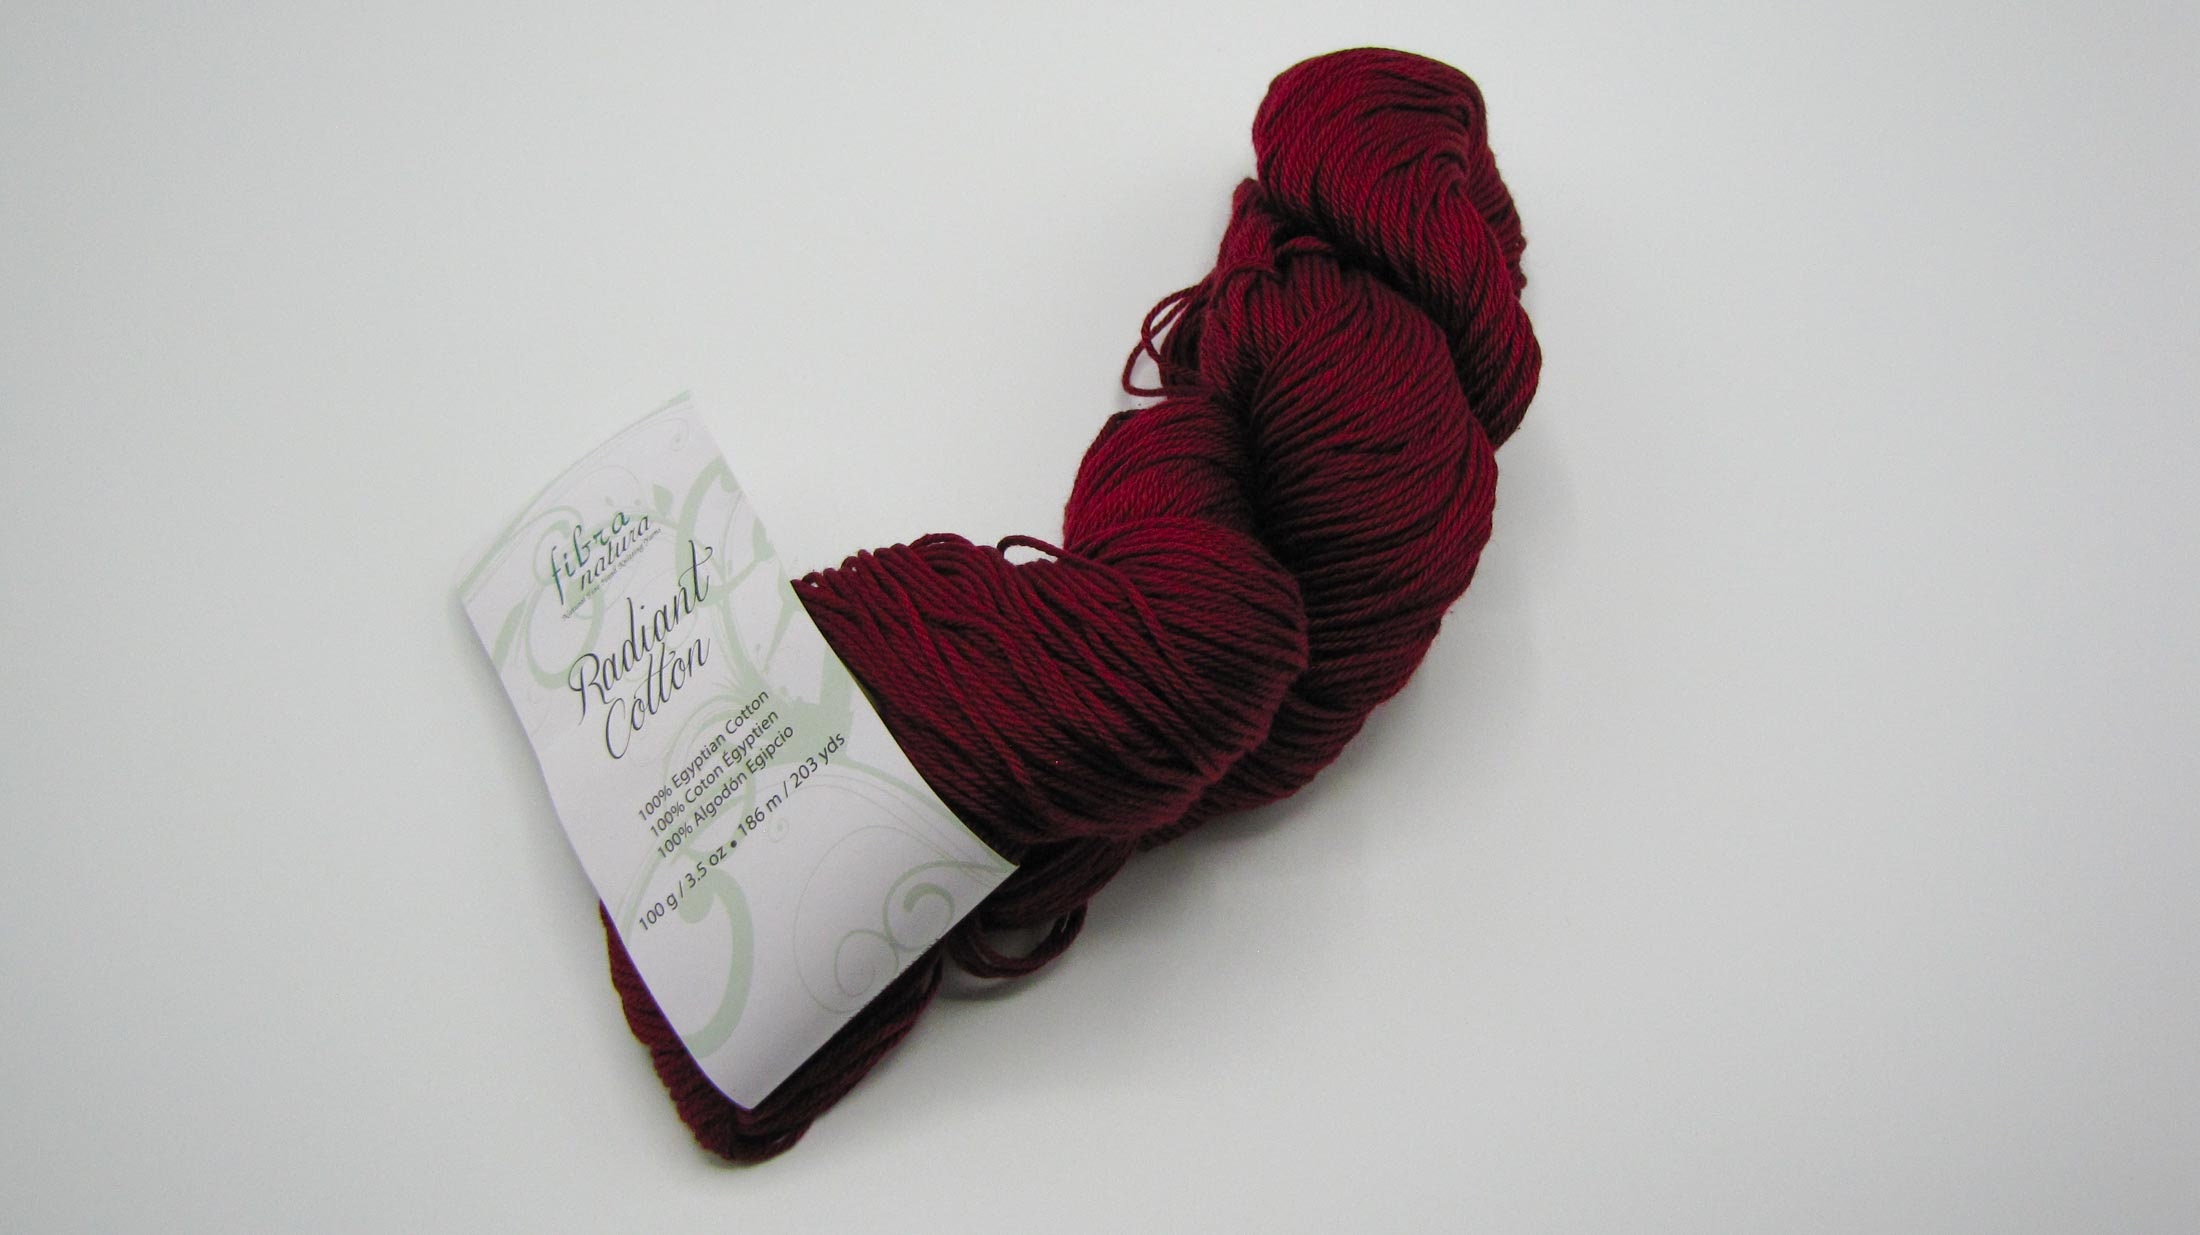 Fibra Natura Radiant Cotton Yarn, Egyptian Cotton Yarn, Cabernet Color 825,  Lot 2078, Radiant Cotton Yarn -  Canada